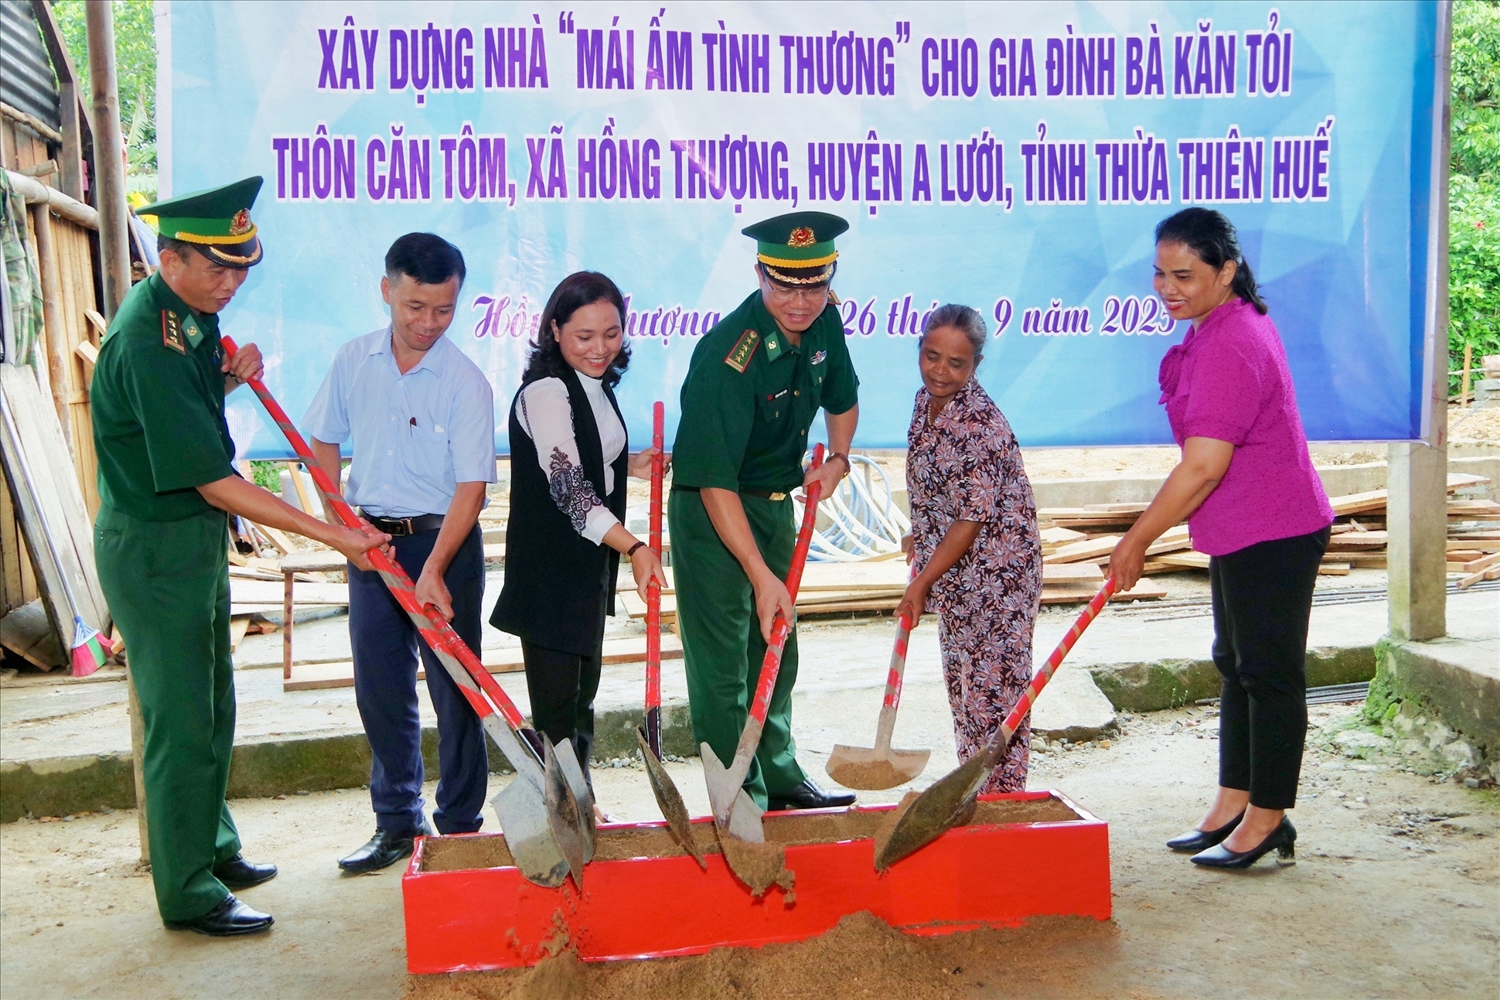 Đại diện BĐBP tỉnh Thừa Thiên Huế và chính quyền địa phương khởi công xây dựng nhà cho gia đình bà Kăn Tỏi.